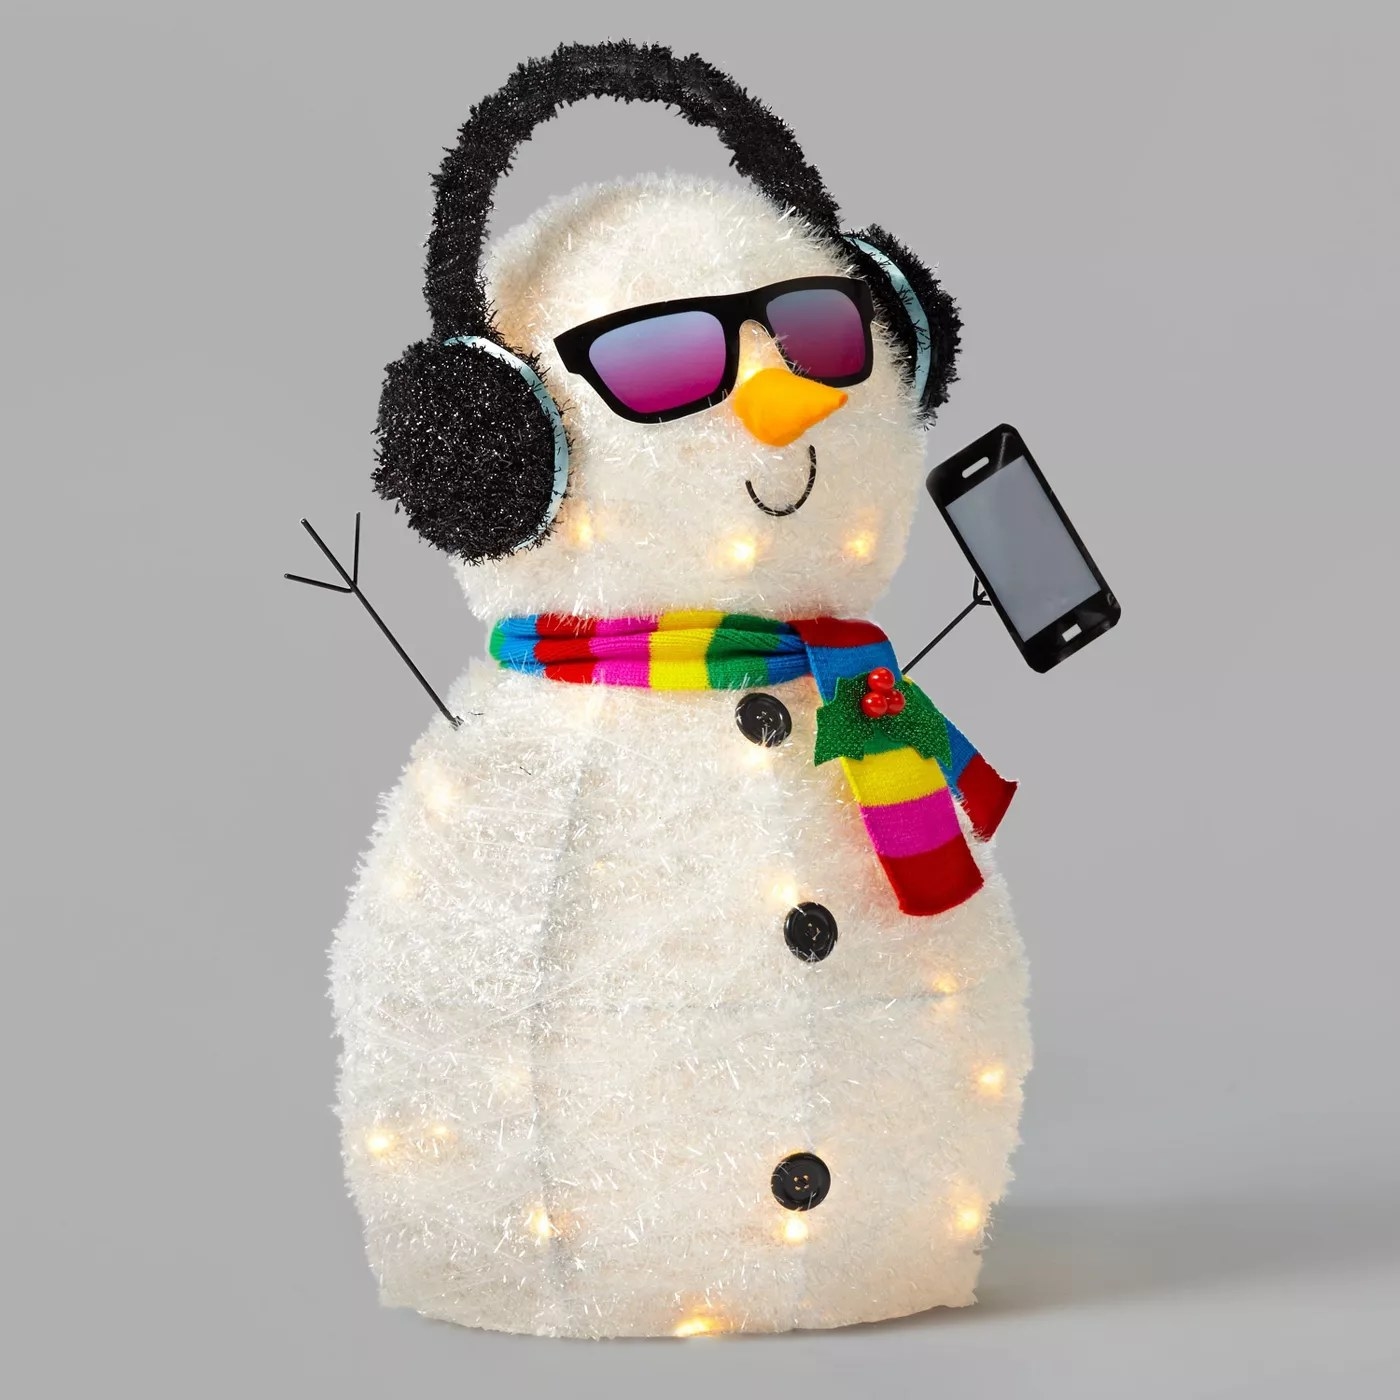 The light-up snowman